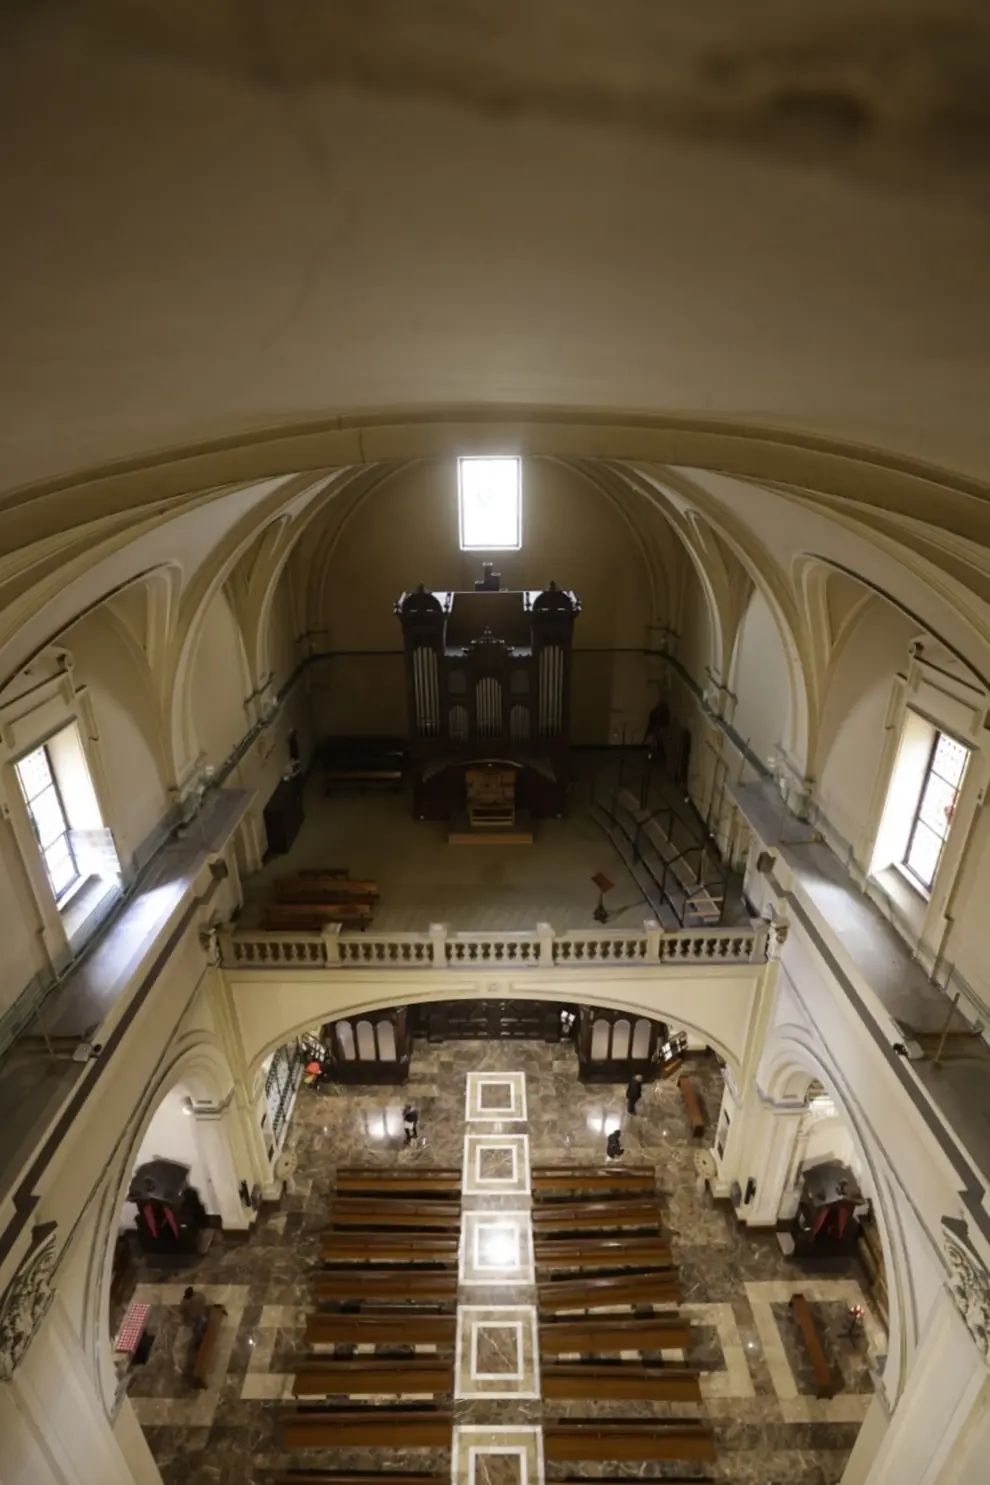 En busca de un tesoro con Escape Basilic por los lugares más recónditos de la basílica de Santa Engracia